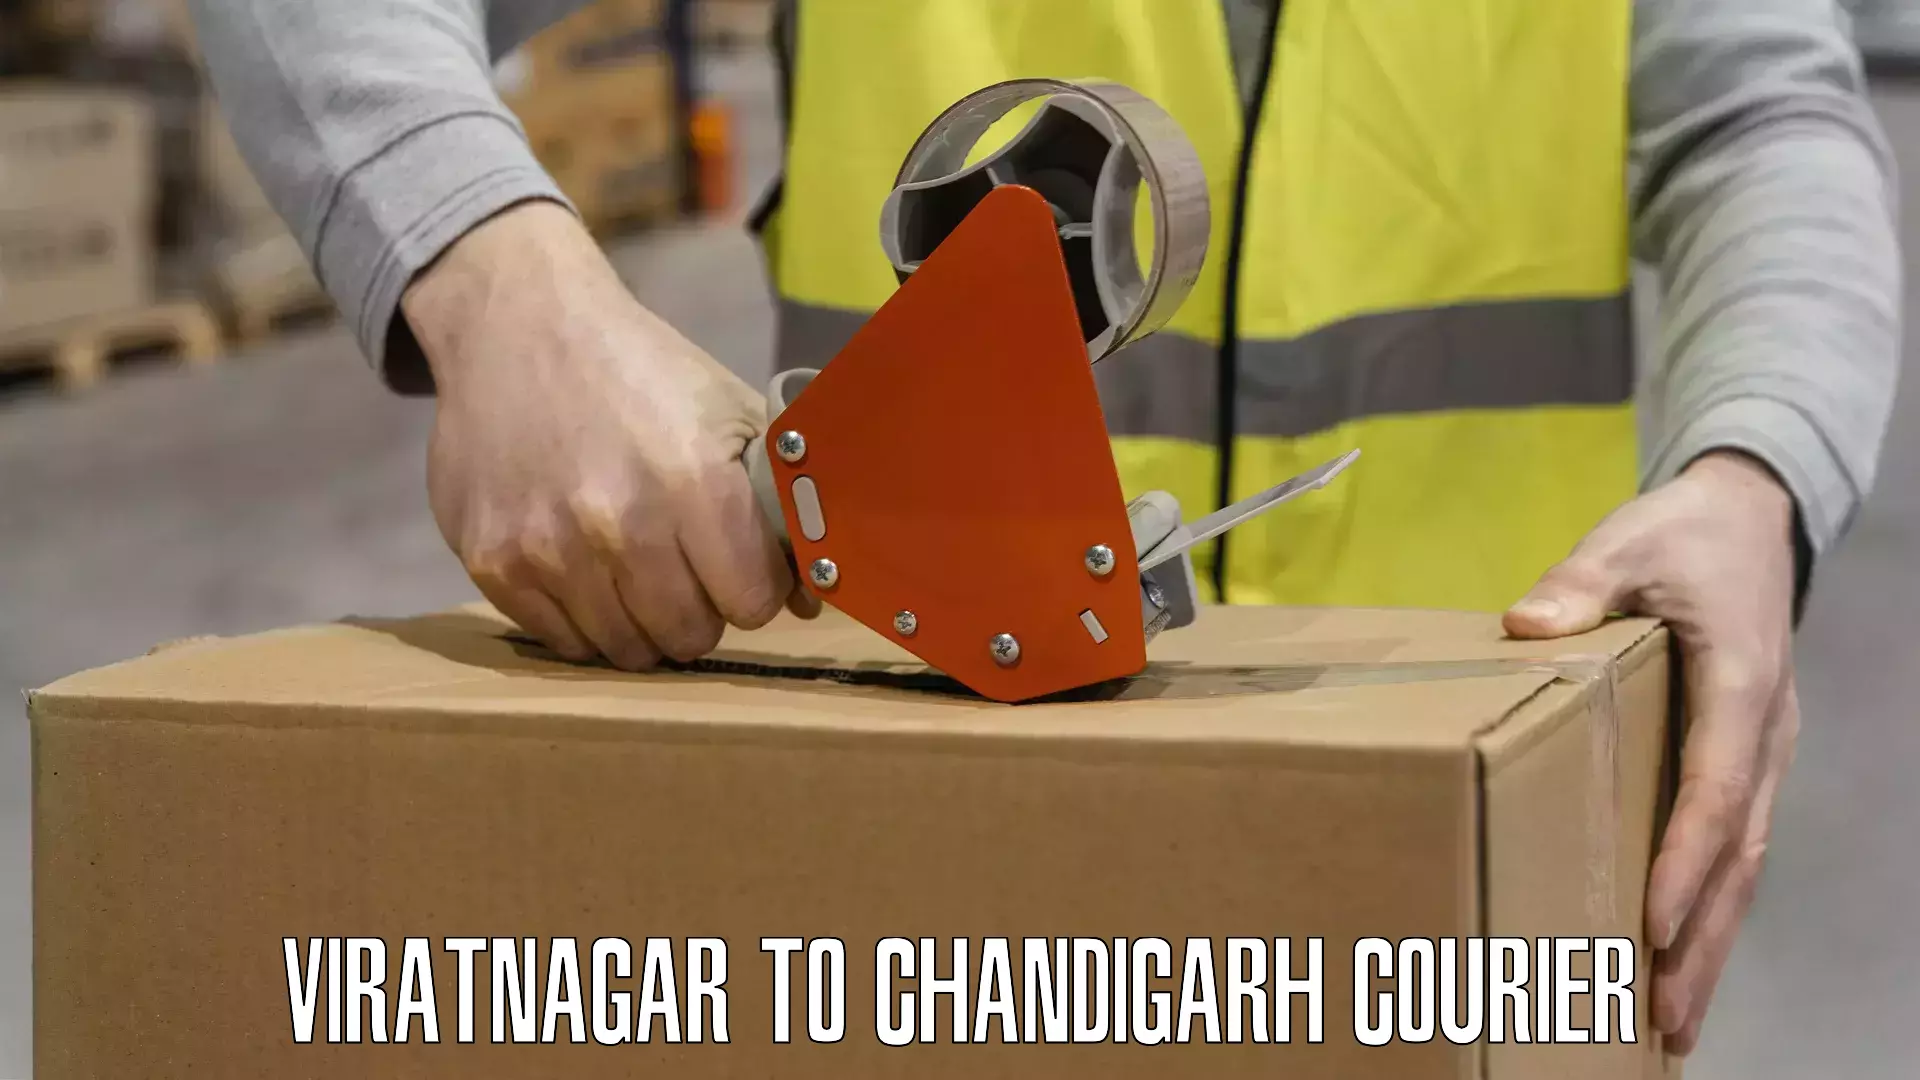 Quick parcel dispatch Viratnagar to Chandigarh